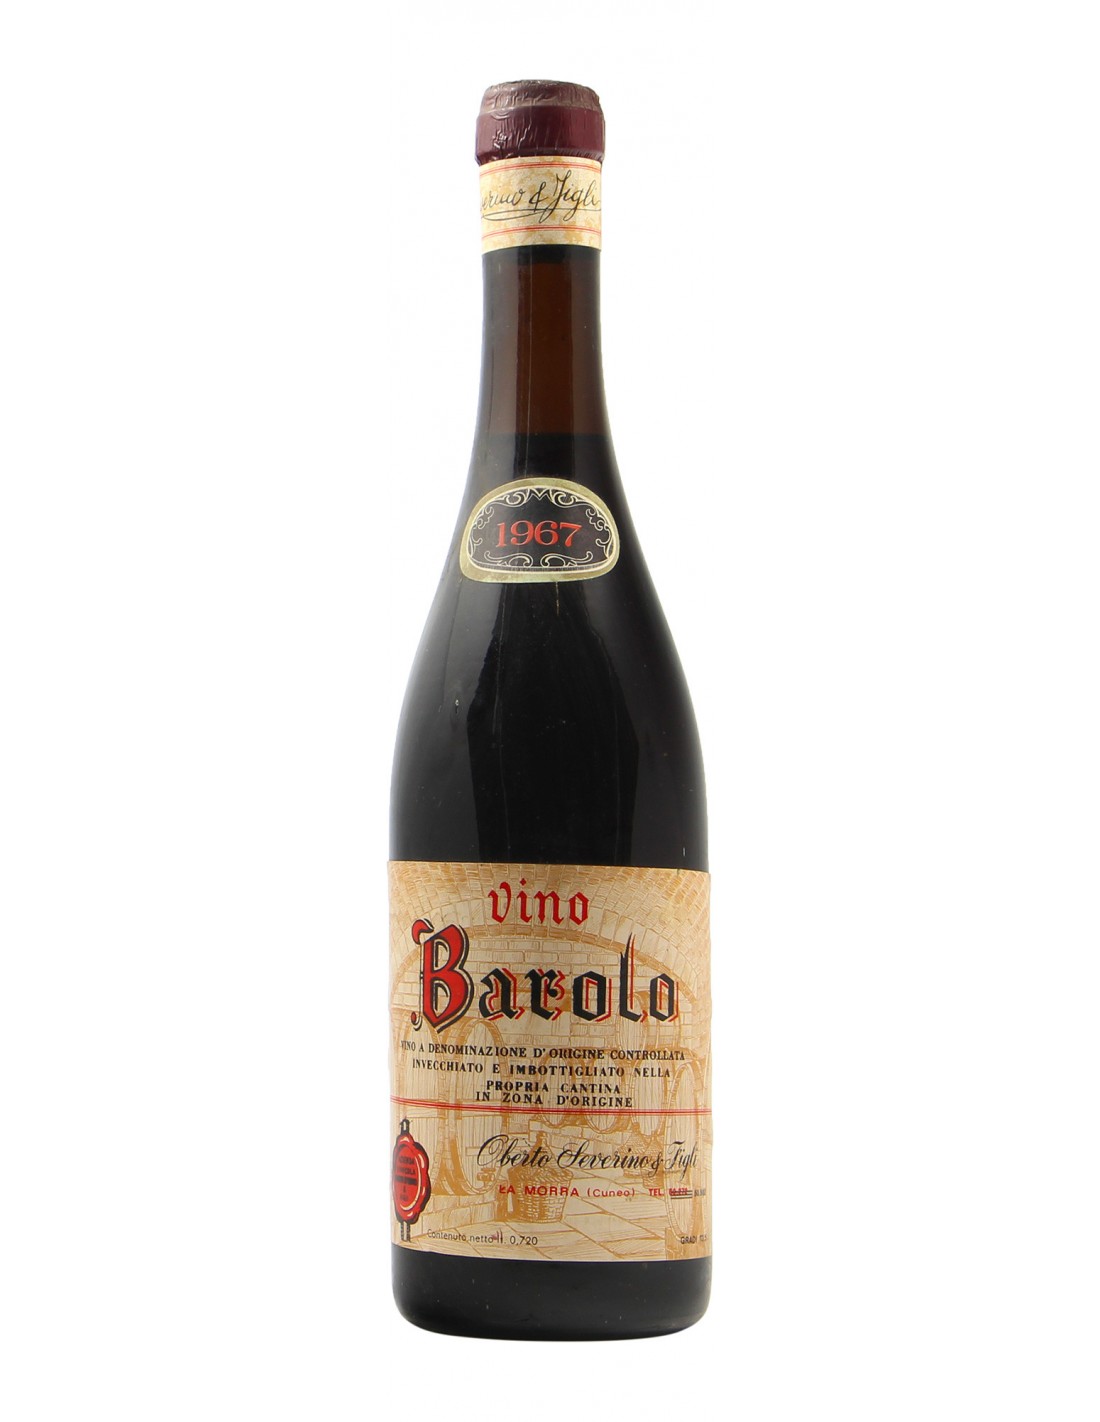 BAROLO 1967 OBERTO SEVERINO Grandi Bottiglie